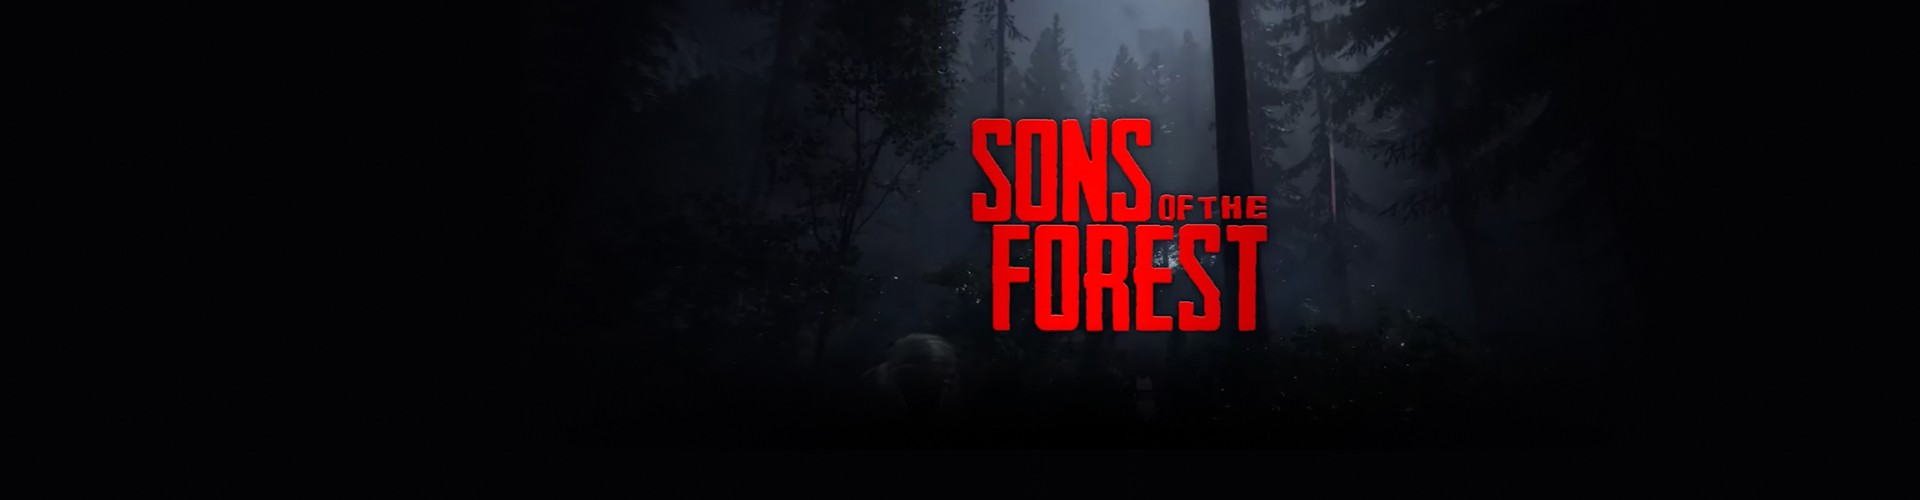 Configuration PC pour jouer à Sons Of The Forest